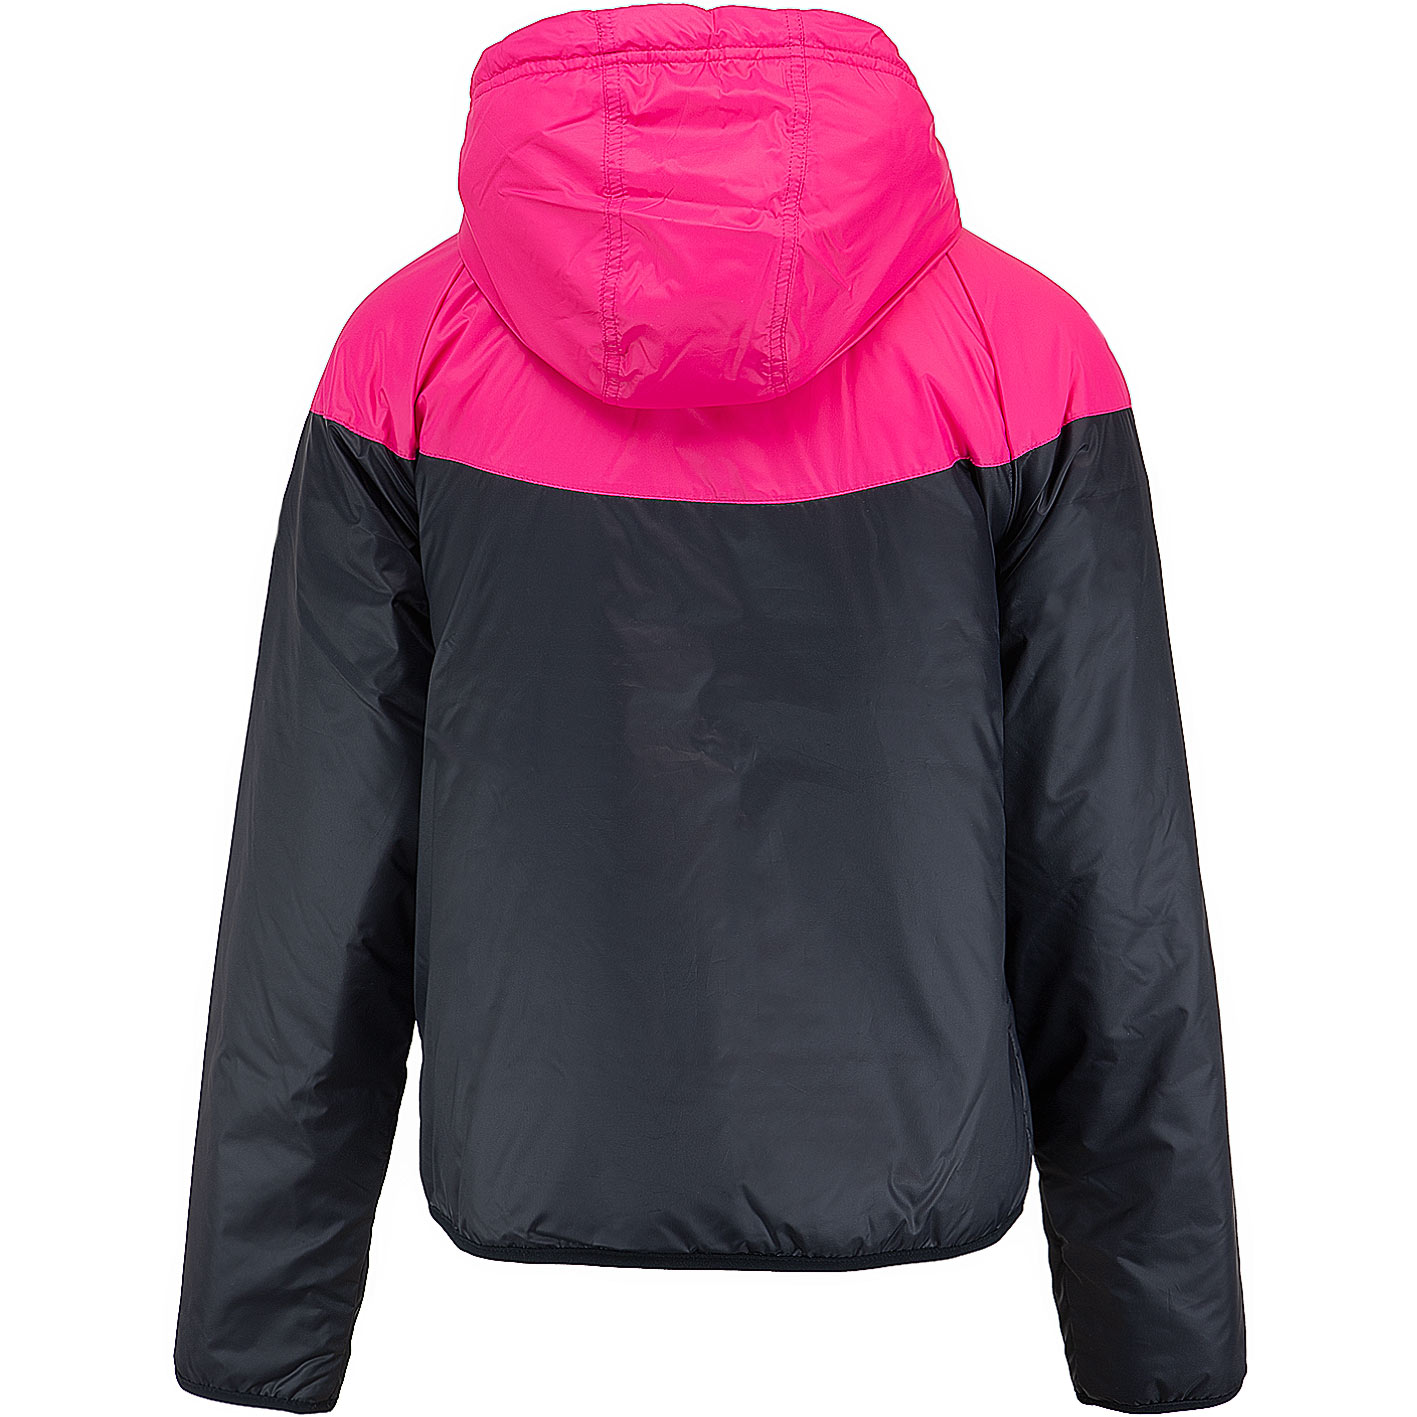 ☆ Nike Damen Jacke Windrunner Syn Fill pink - hier bestellen!